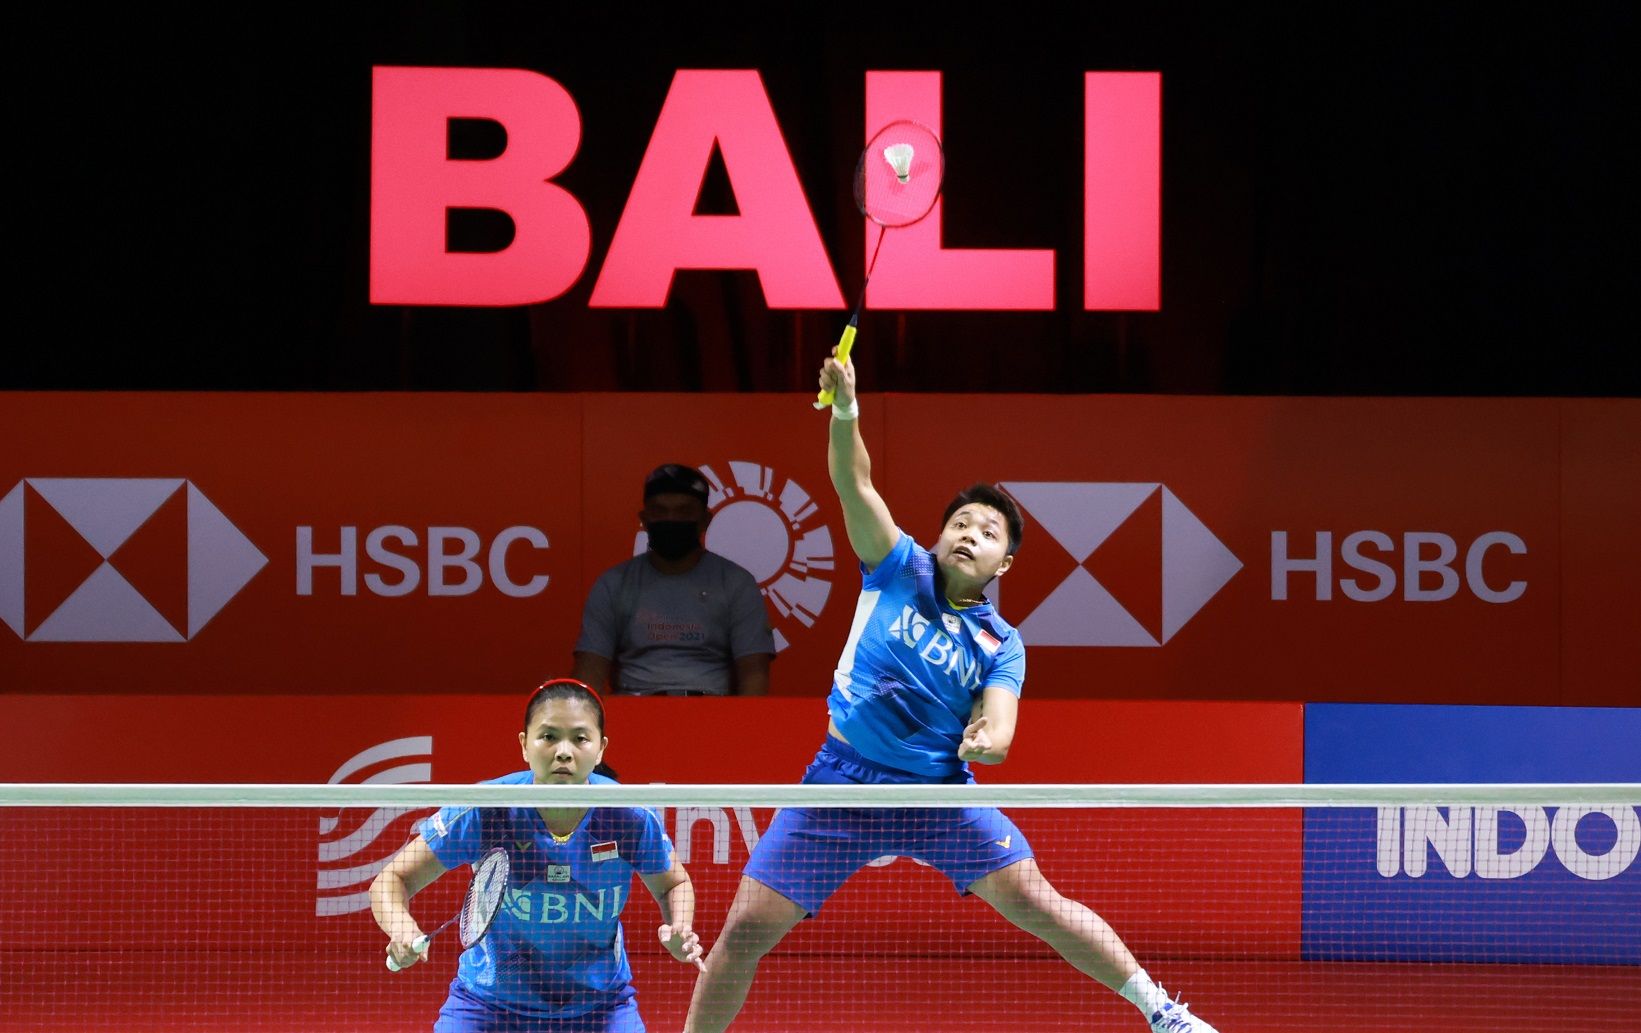 Penampilan Greysia Polii (depan net)/Apriyani Rahayu di semifinal Indonesia Open 2021 hari Sabtu (27/11/2021) di Bali.